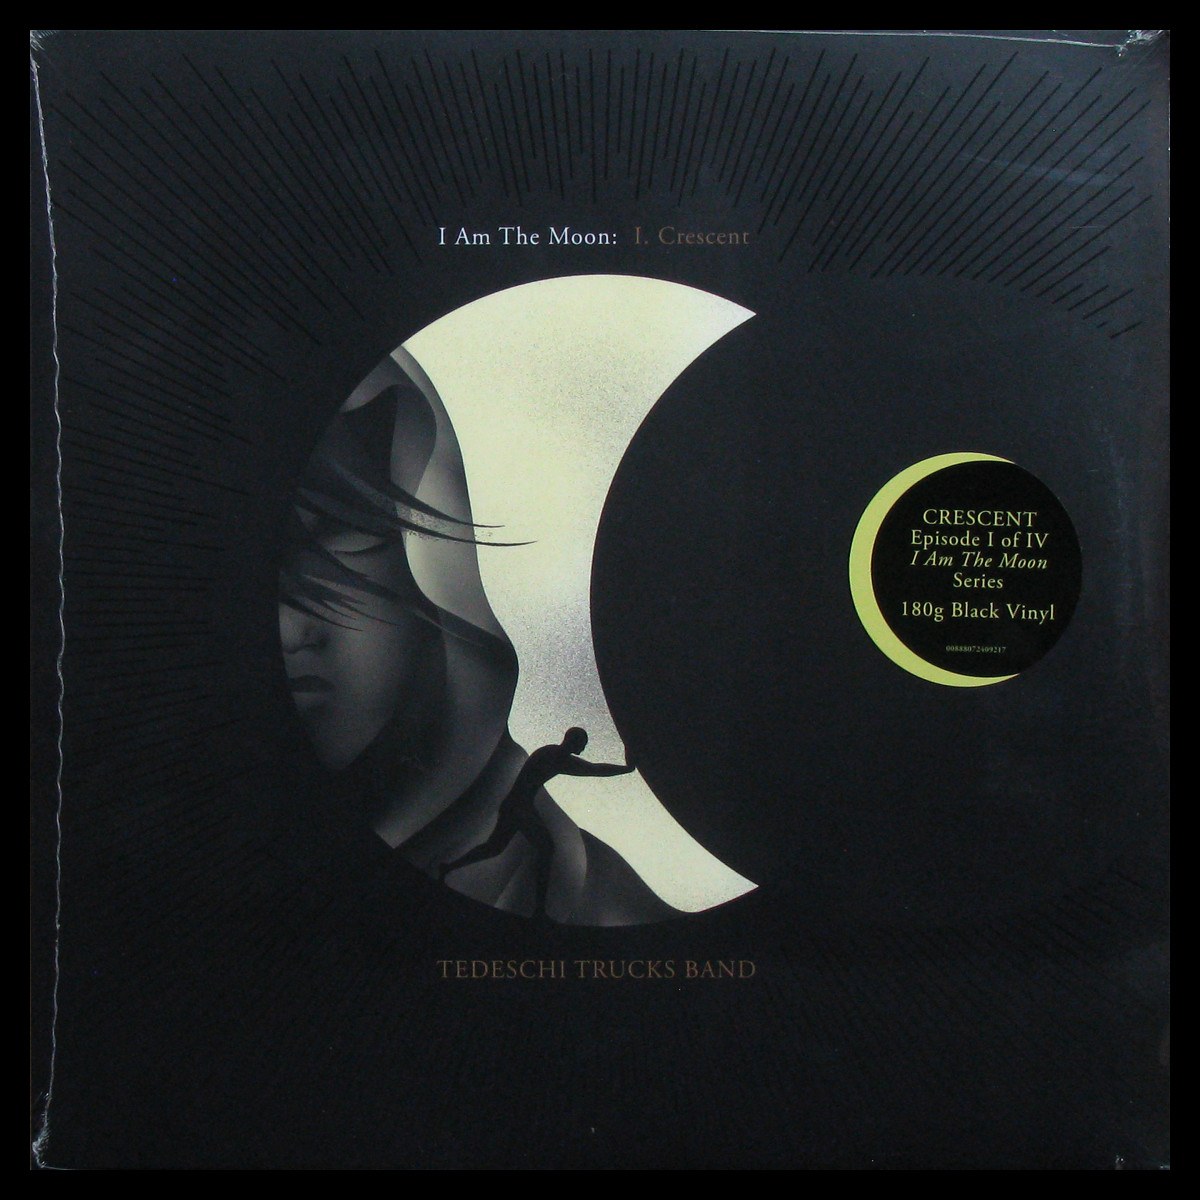 LP Tedeschi Trucks Band — I Am The Moon: I. Crescent фото